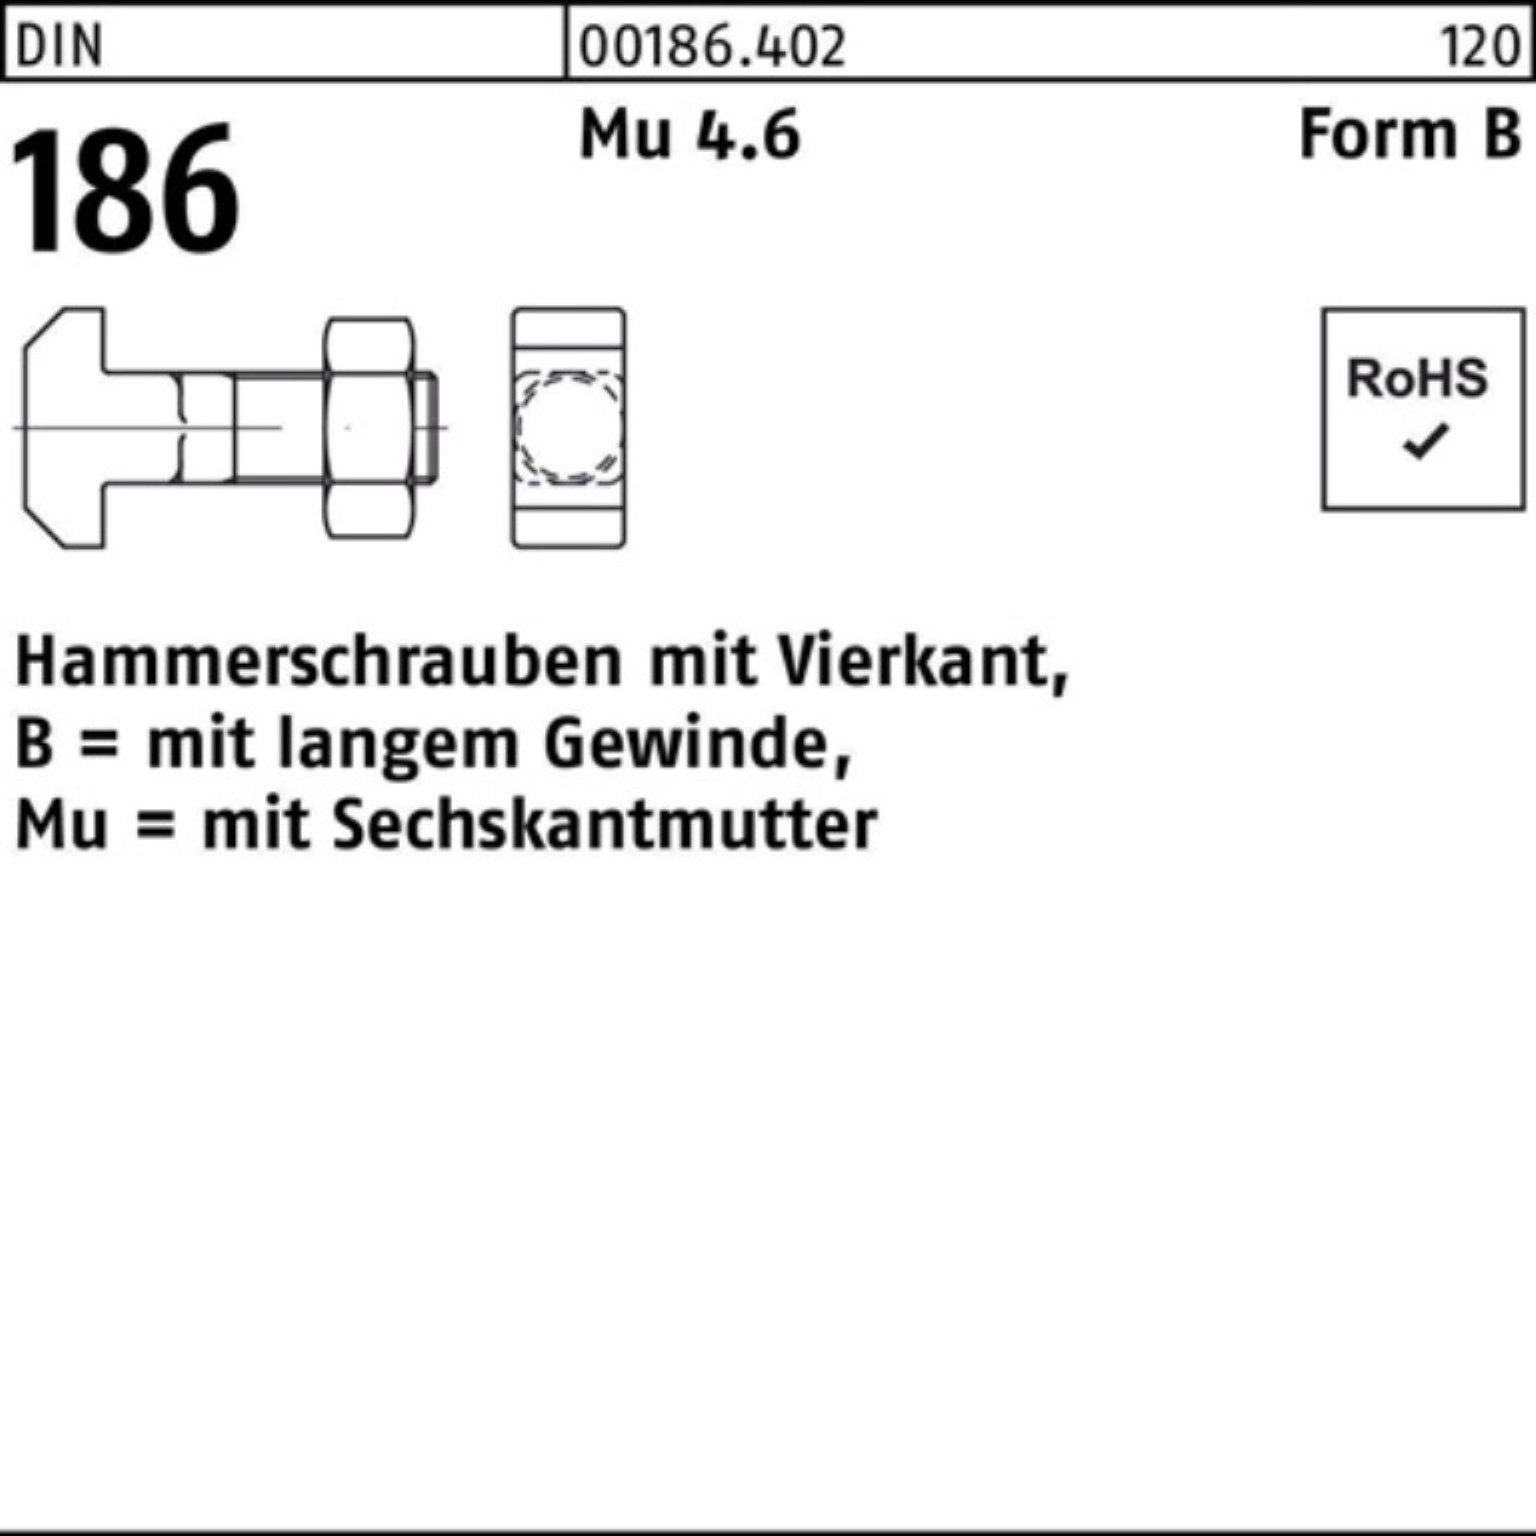 Reyher Schraube 100er Pack FormB BM 6-ktmutter 20x Hammerschraube DIN 186 Vierkant 100